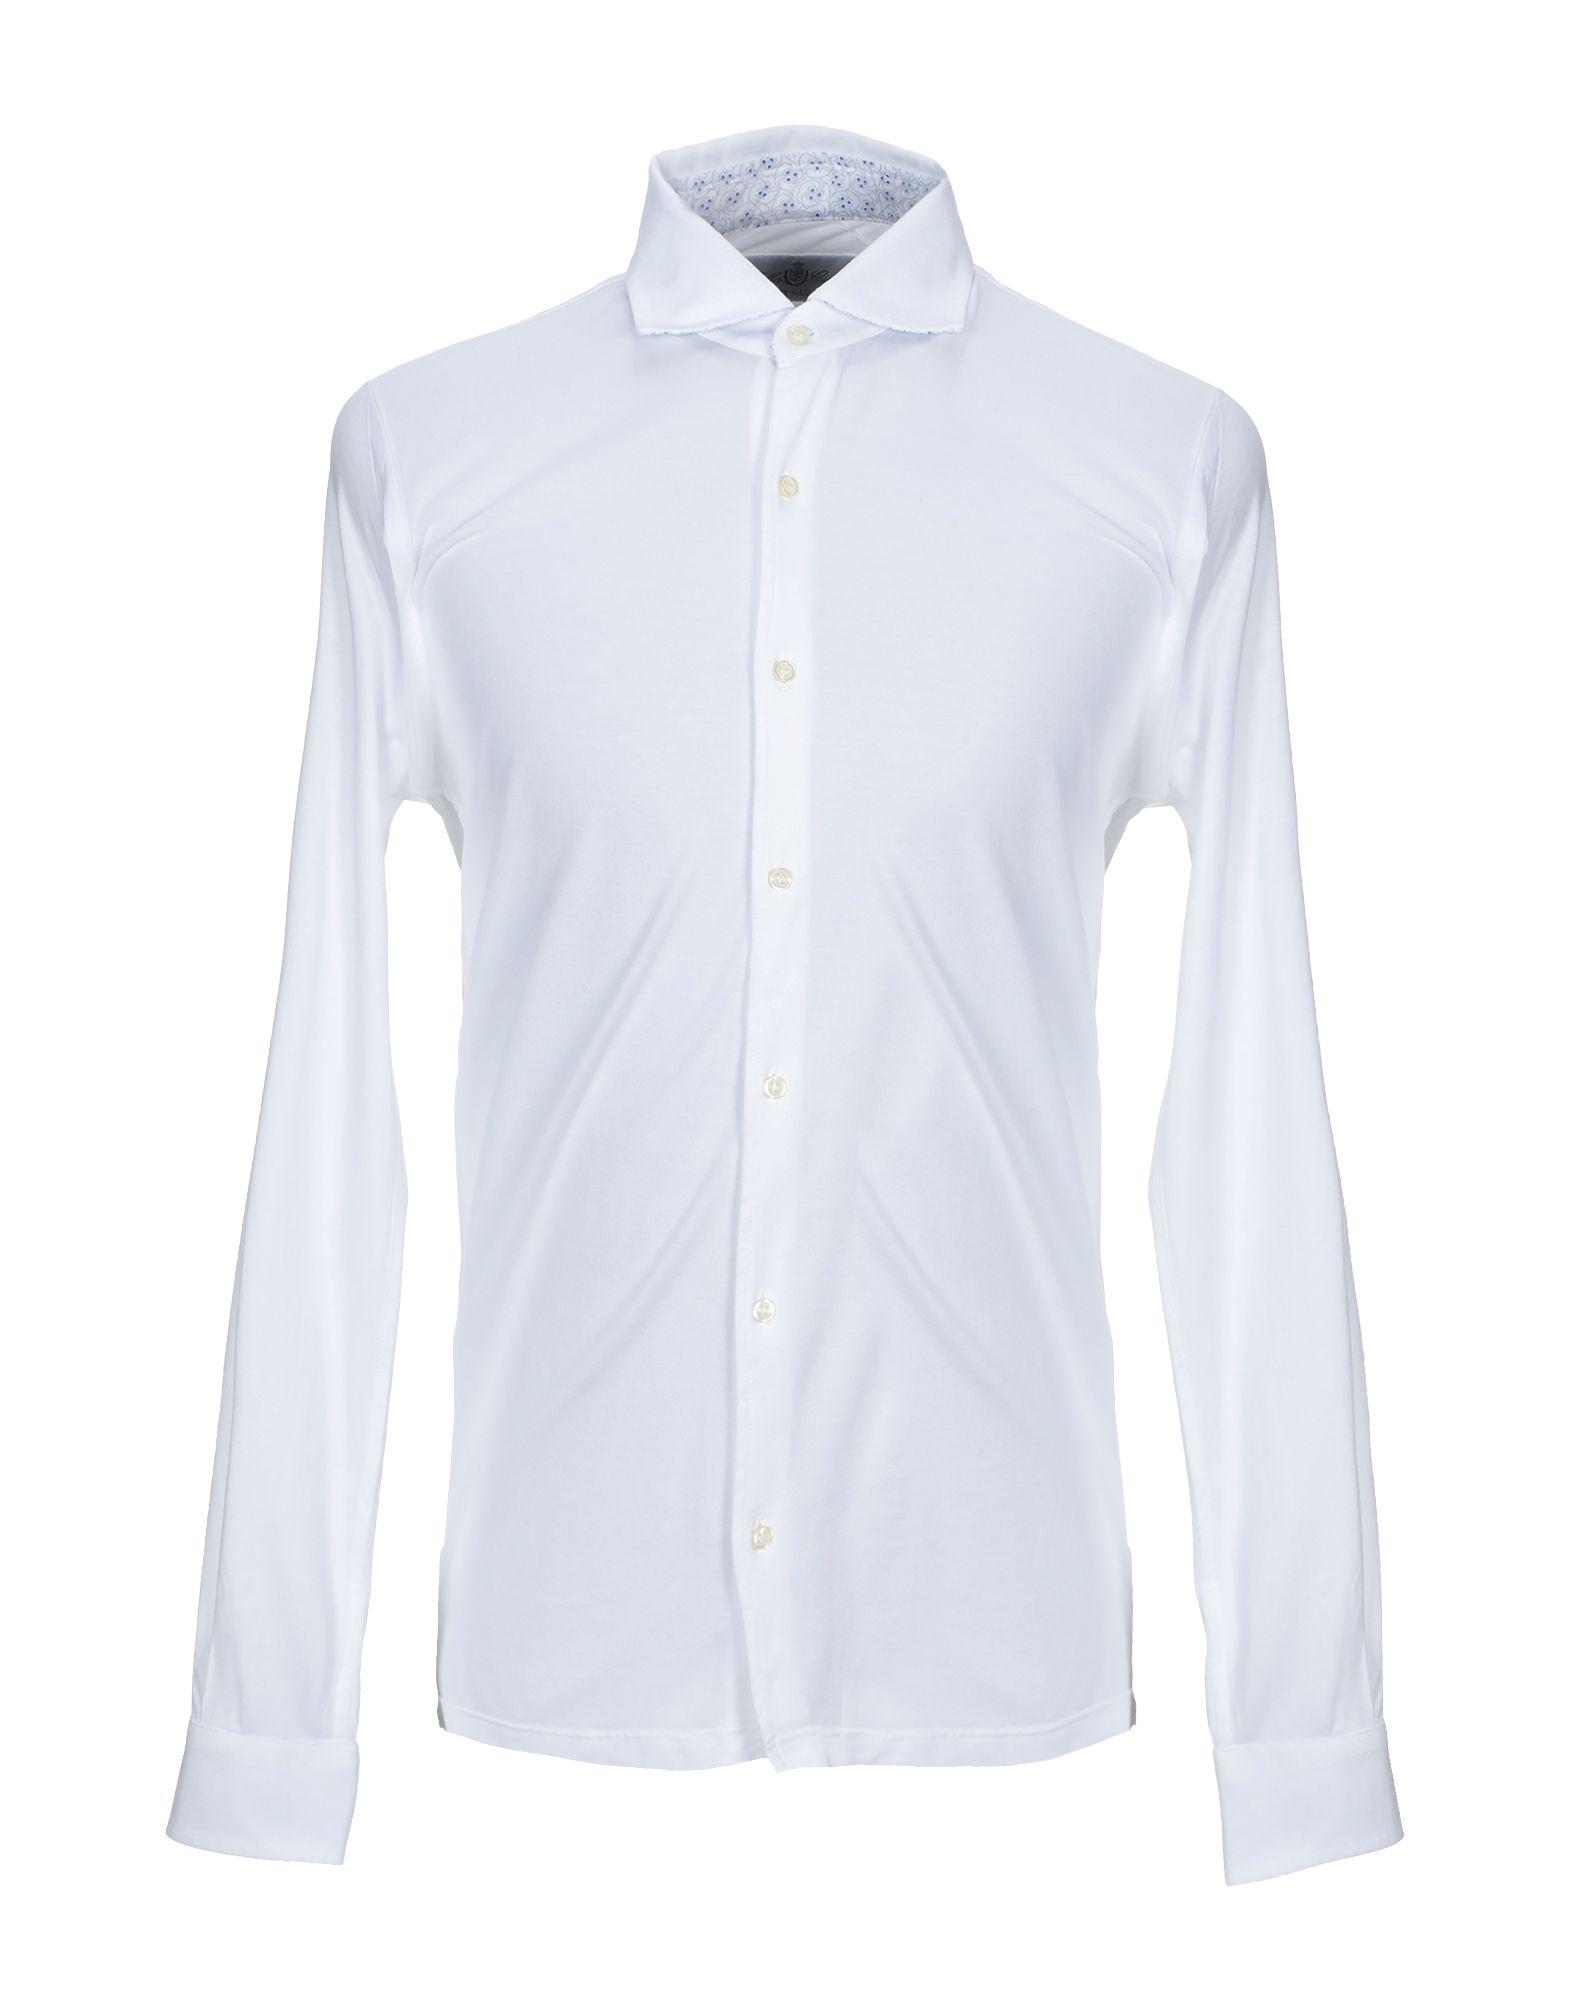 Della Ciana Cotton Shirt in White for Men - Save 60% - Lyst